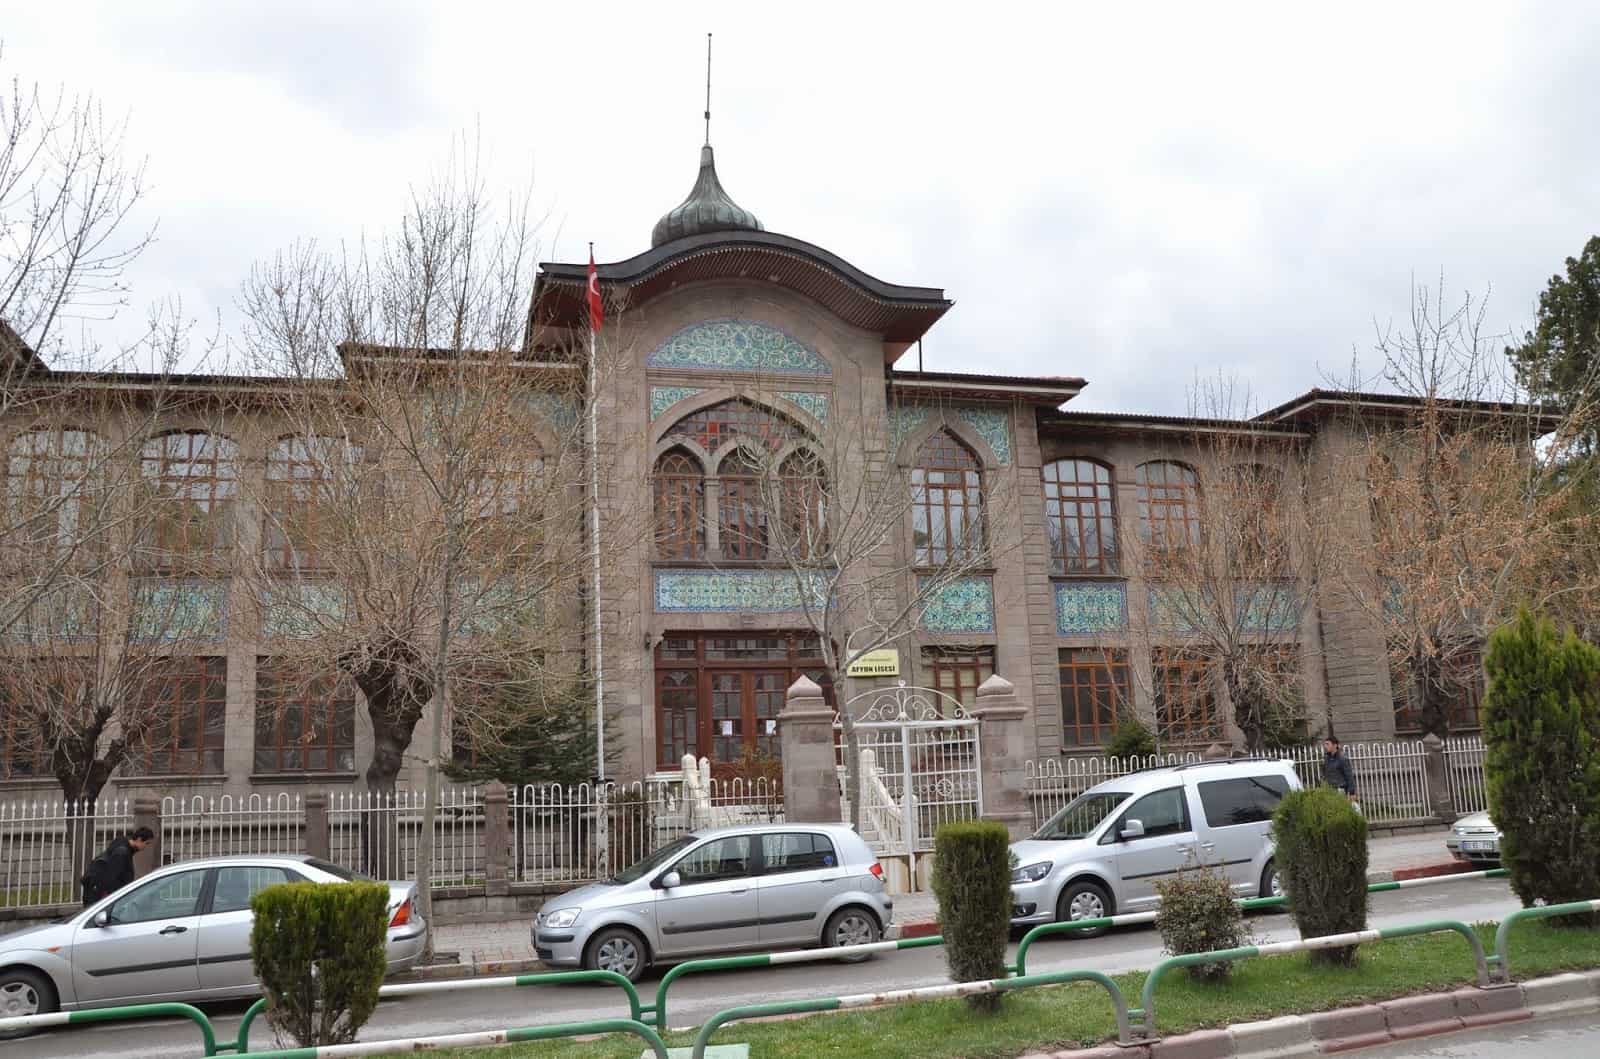 Afyon High School in Afyon, Turkey